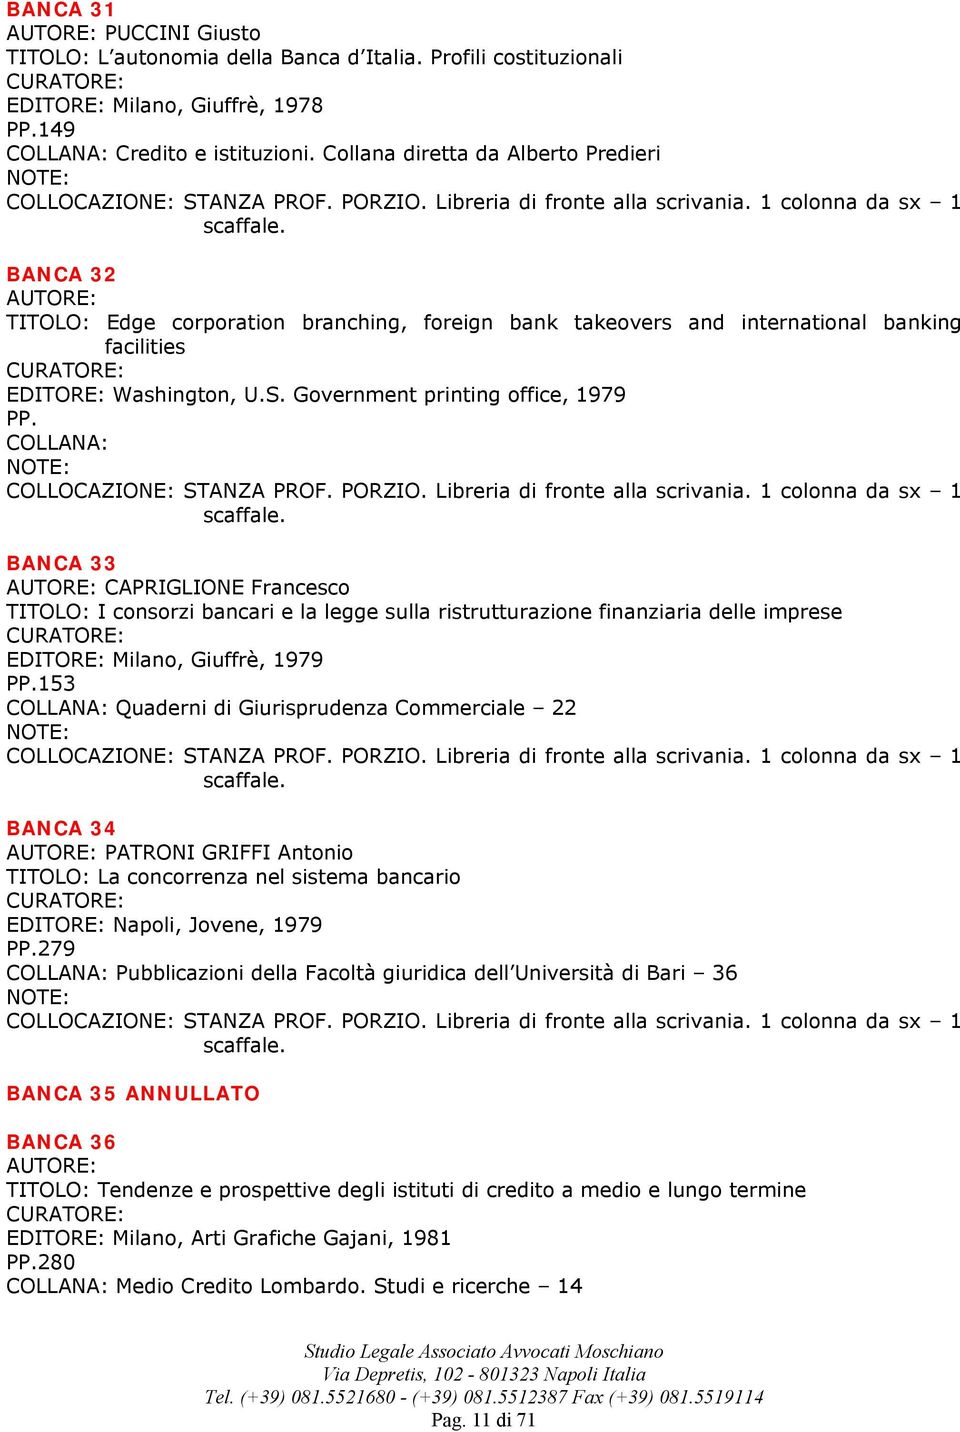 Government printing office, 1979 PP. BANCA 33 CAPRIGLIONE Francesco TITOLO: I consorzi bancari e la legge sulla ristrutturazione finanziaria delle imprese EDITORE: Milano, Giuffrè, 1979 PP.